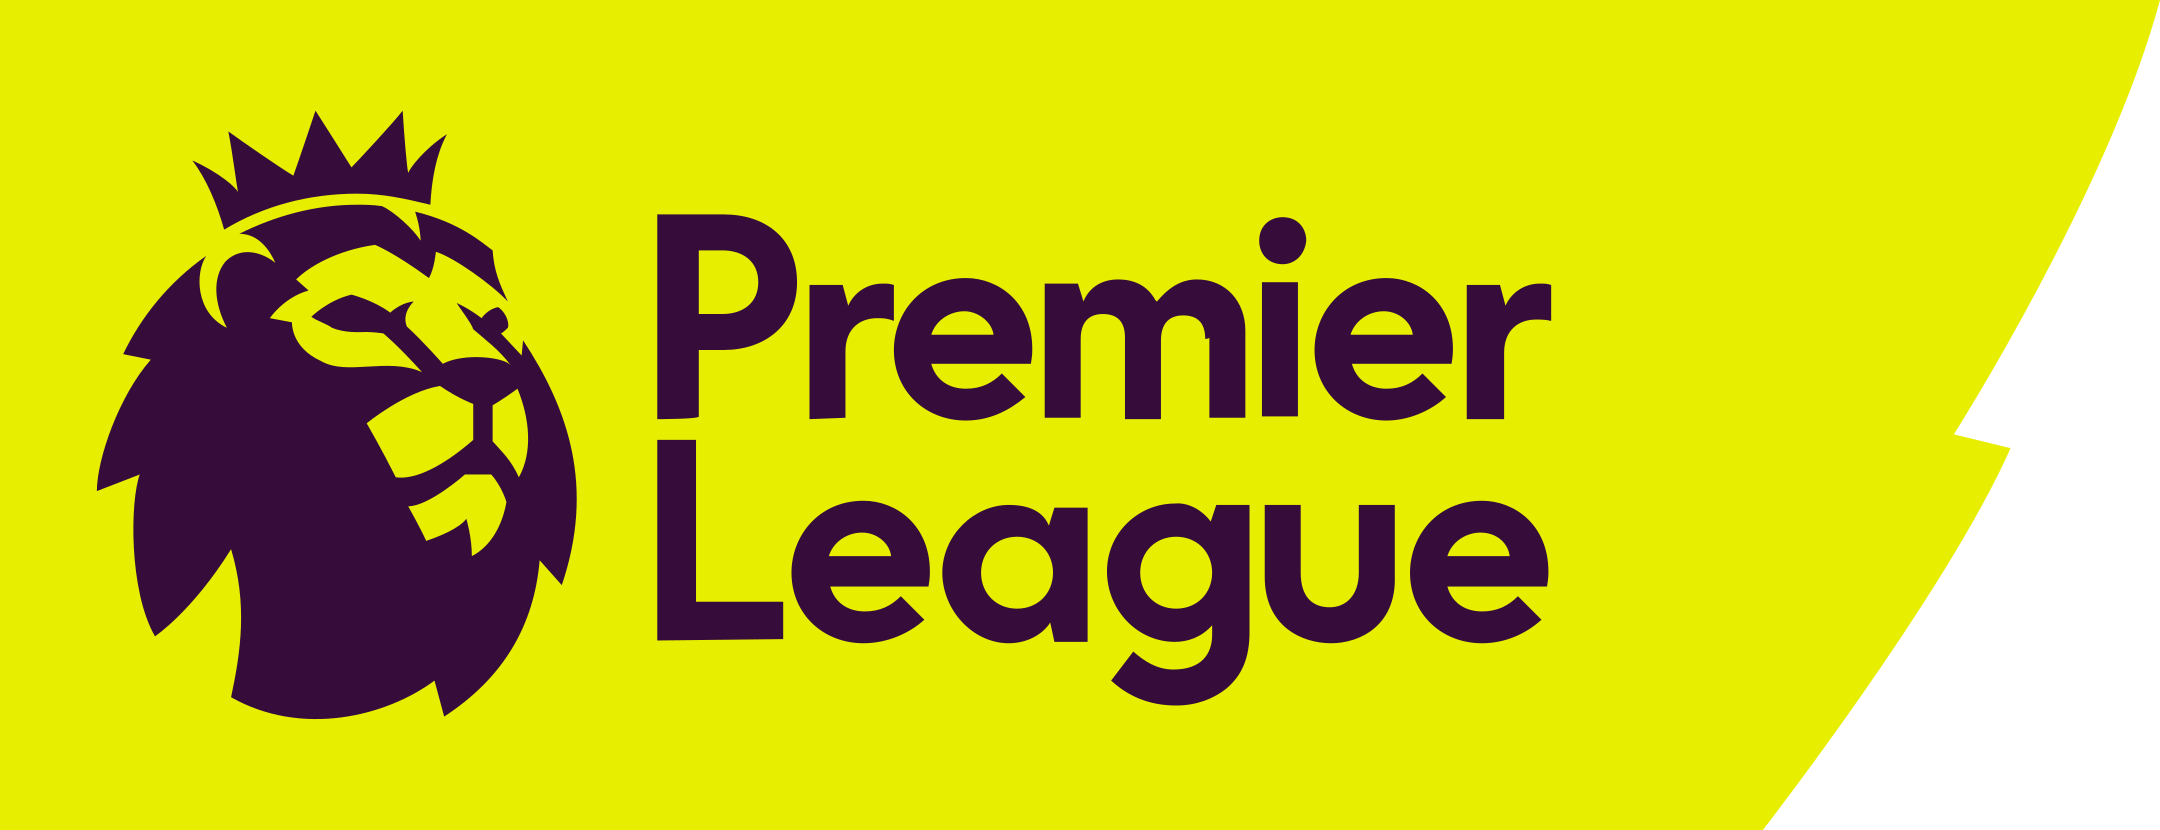 premier league 1 - Premier League Logo